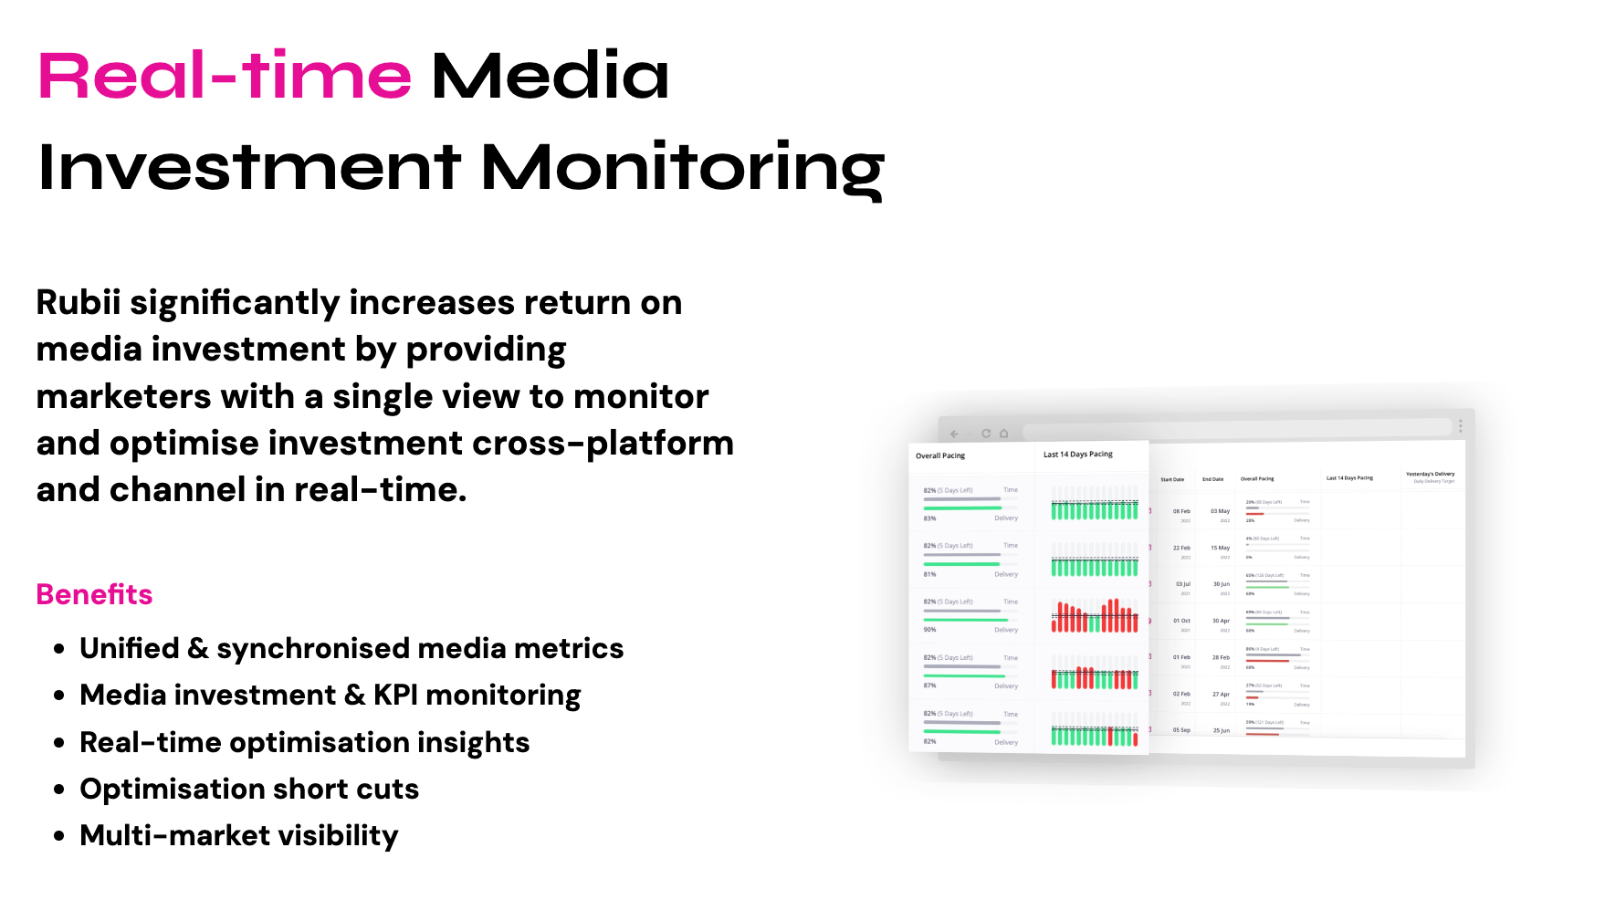 Monitoramento de Investimento em Mídia em Tempo Real